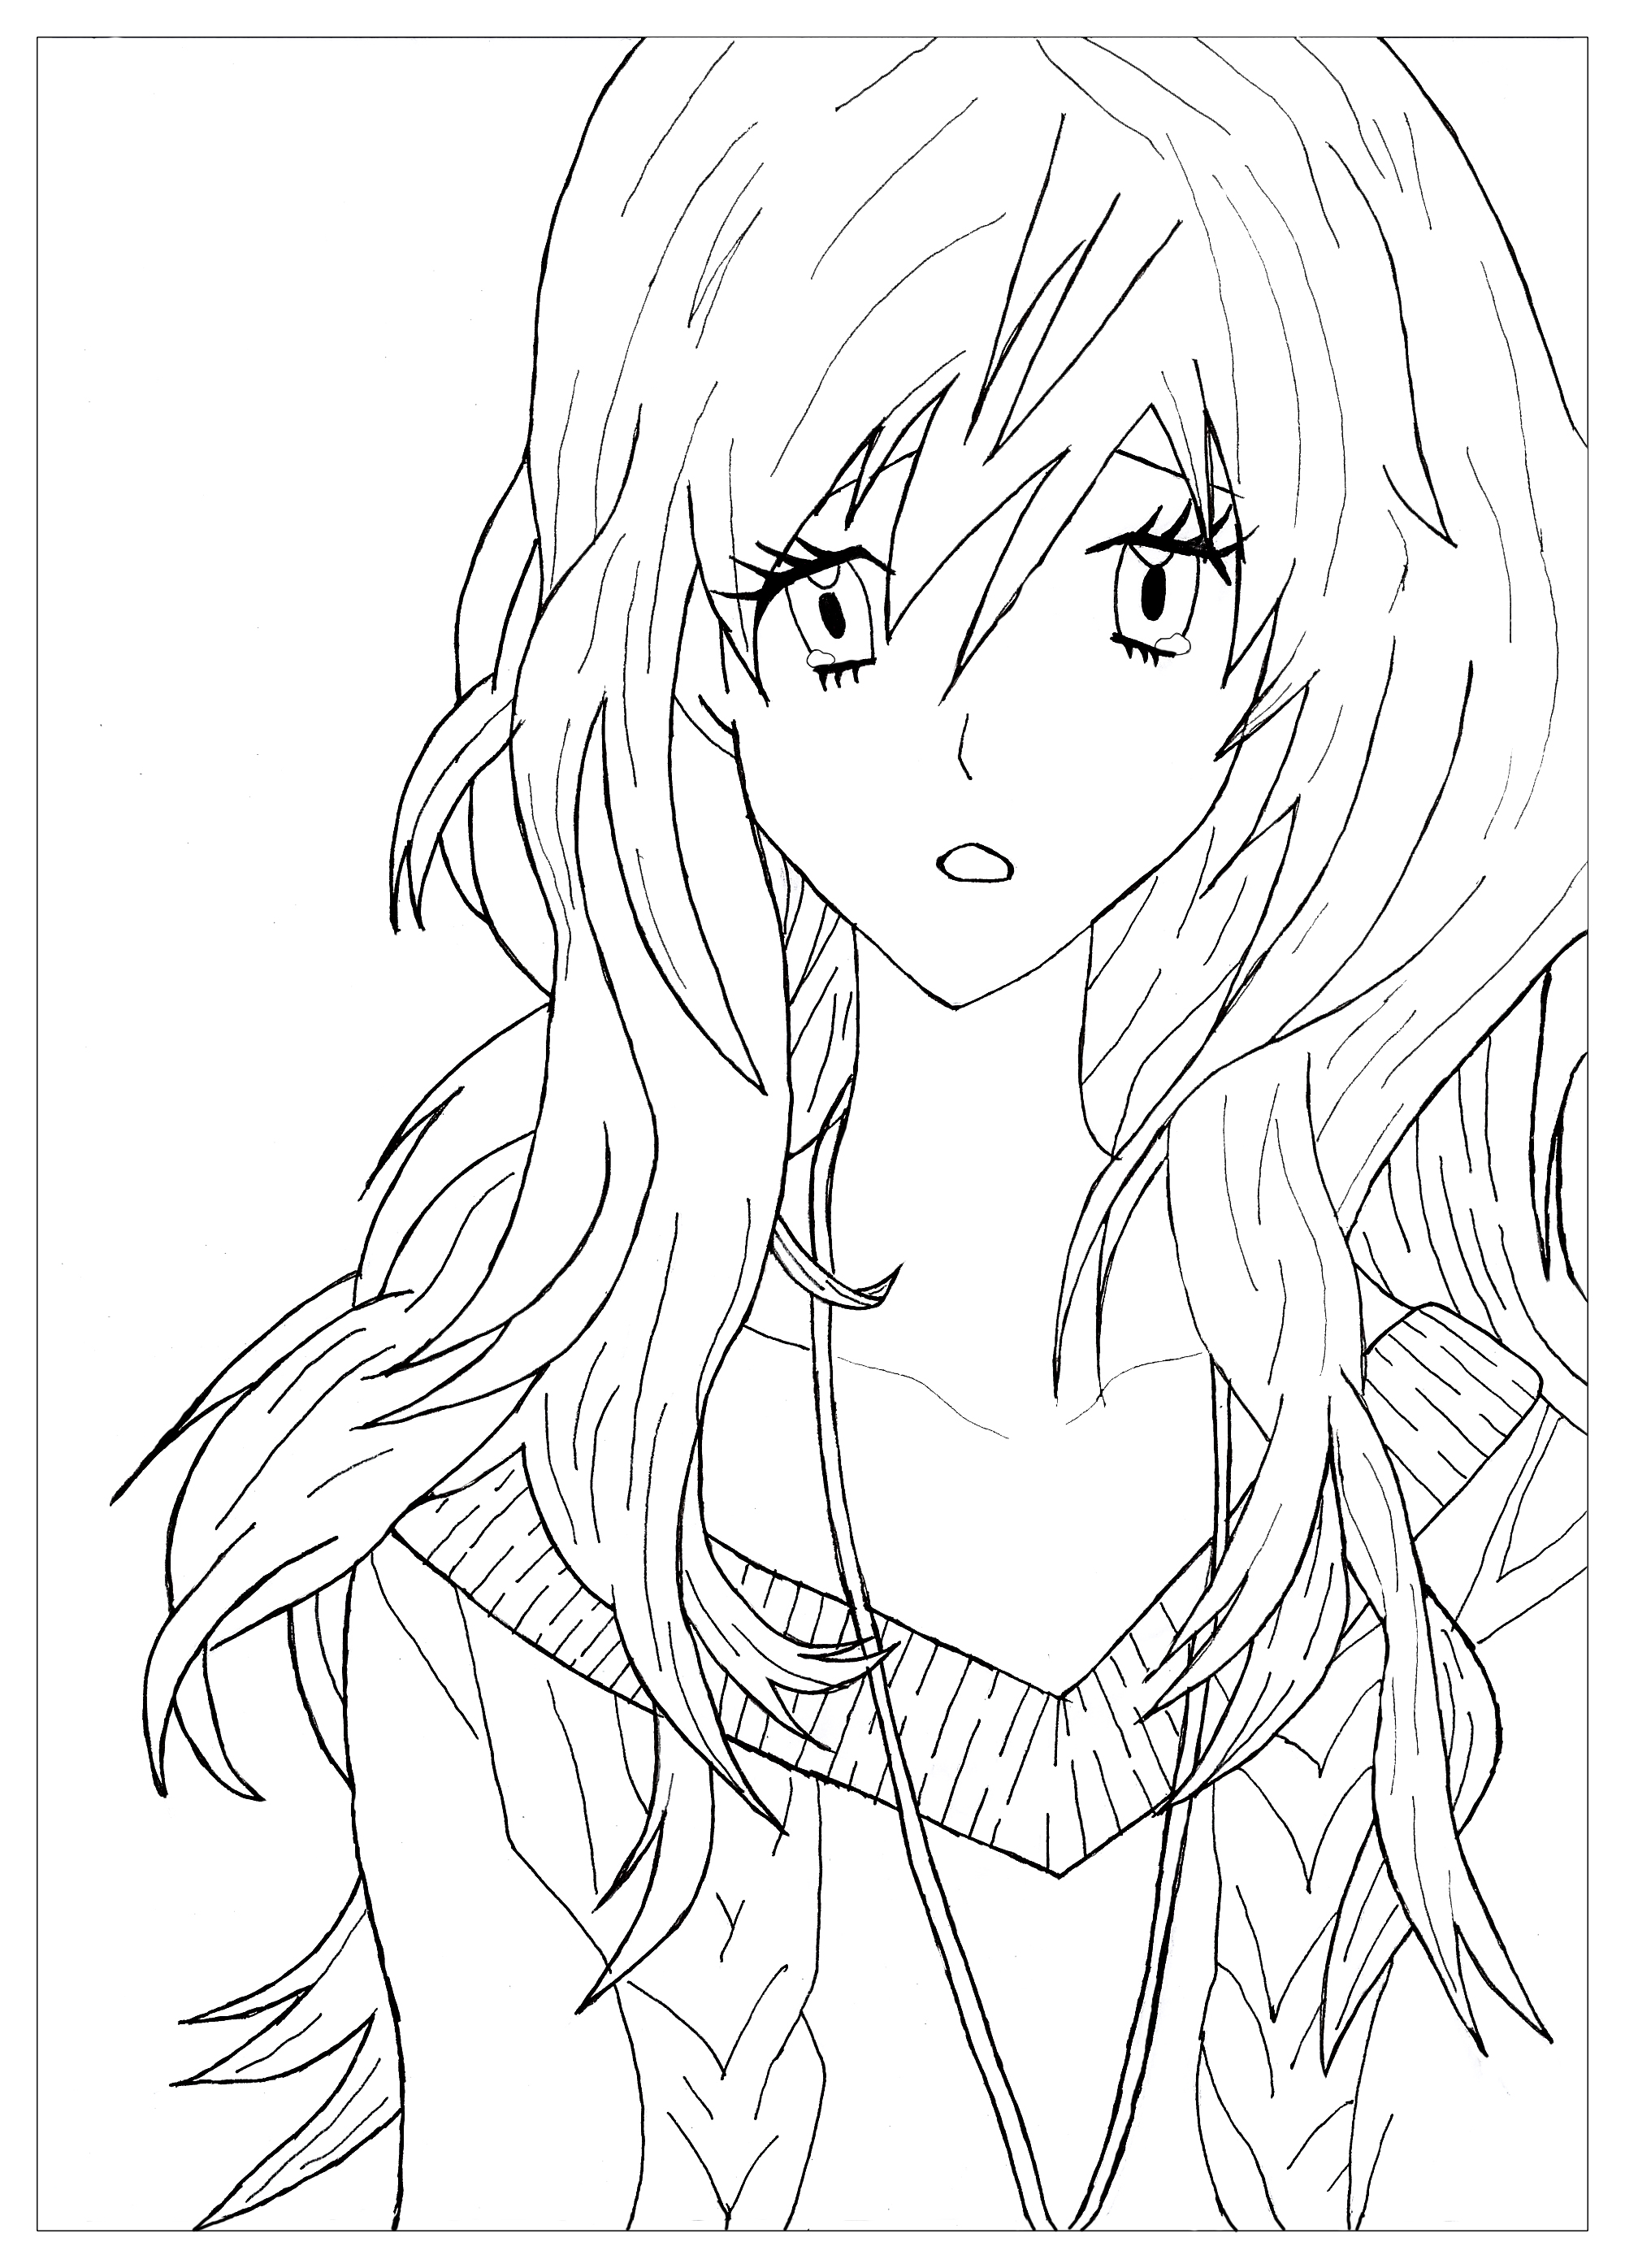 Manga / Anime coloring page representing a sad girl